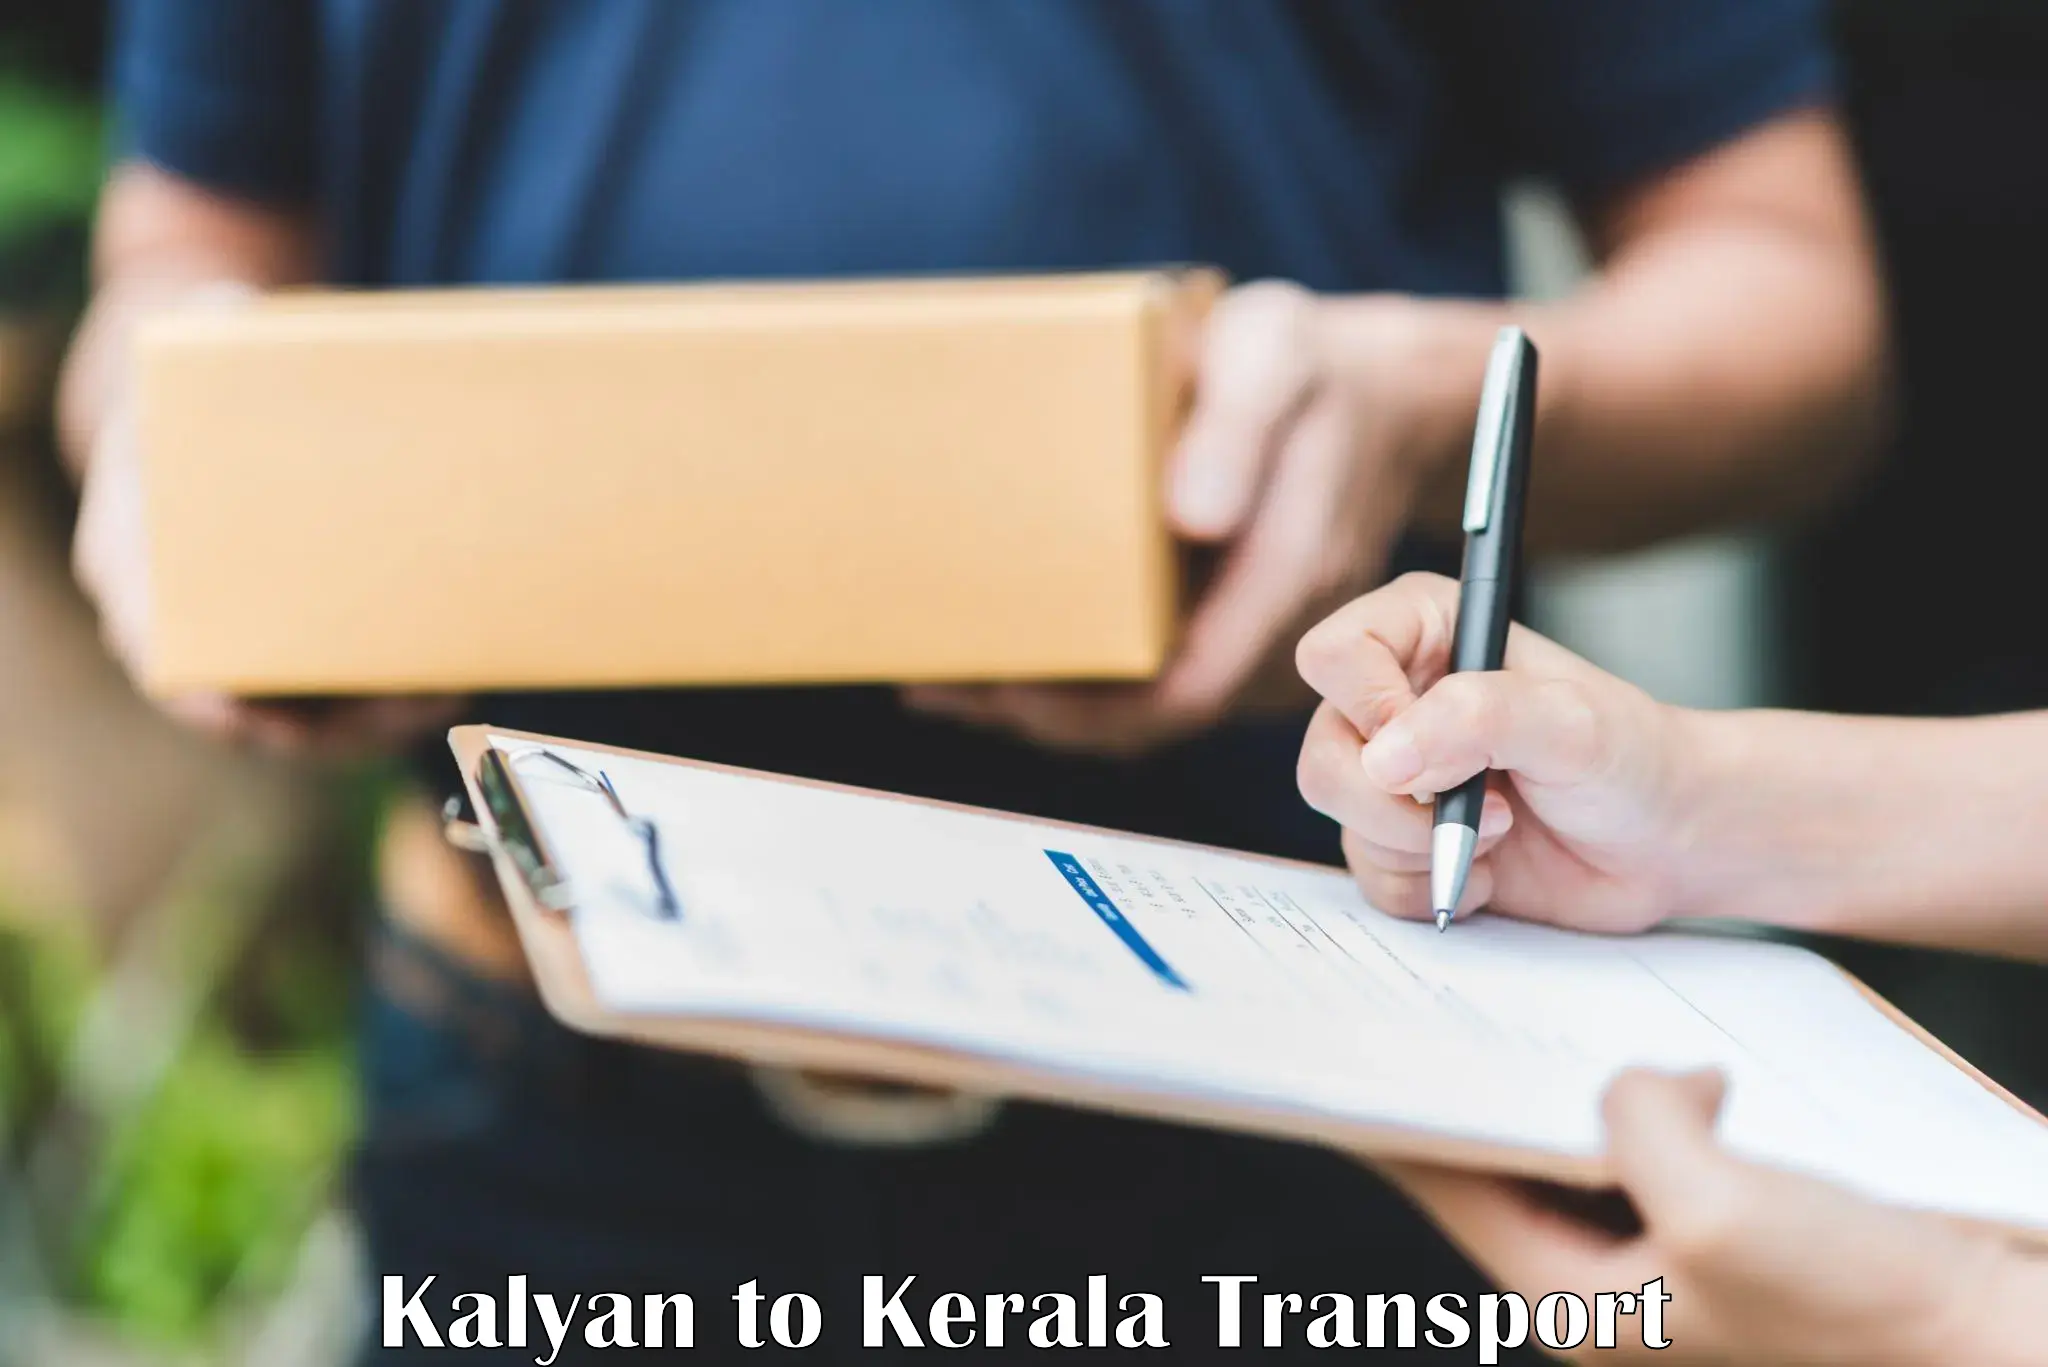 Daily transport service Kalyan to Irinjalakuda